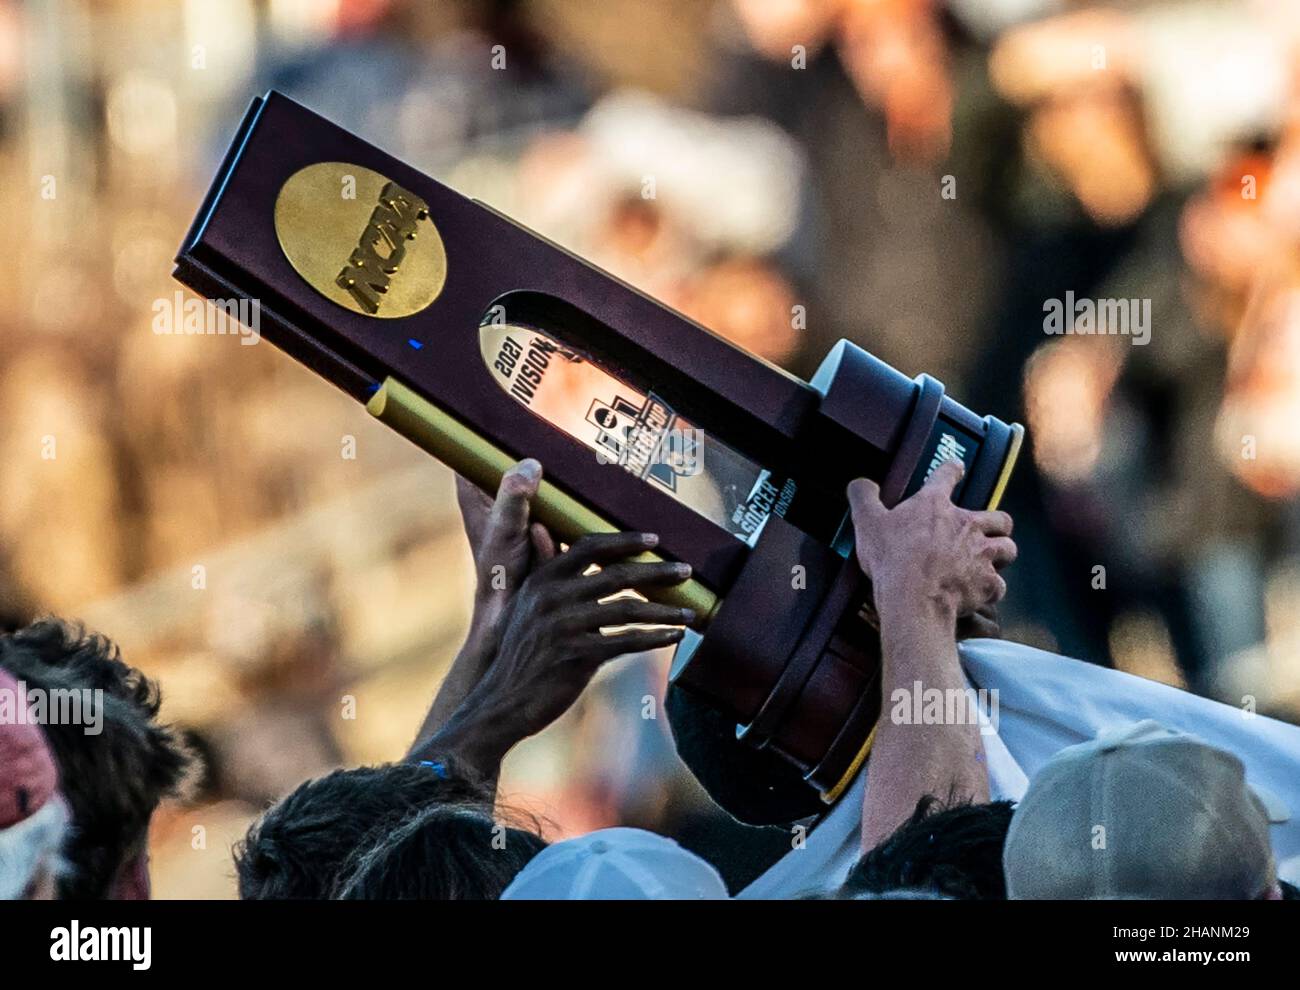 CARY, NC - DÉCEMBRE 12 : les vainqueurs Clemson de la finale de la coupe du collège masculin de la NCAA Div 1 entre les Washington Huskies et les Clemson Tigers, le décembre Banque D'Images